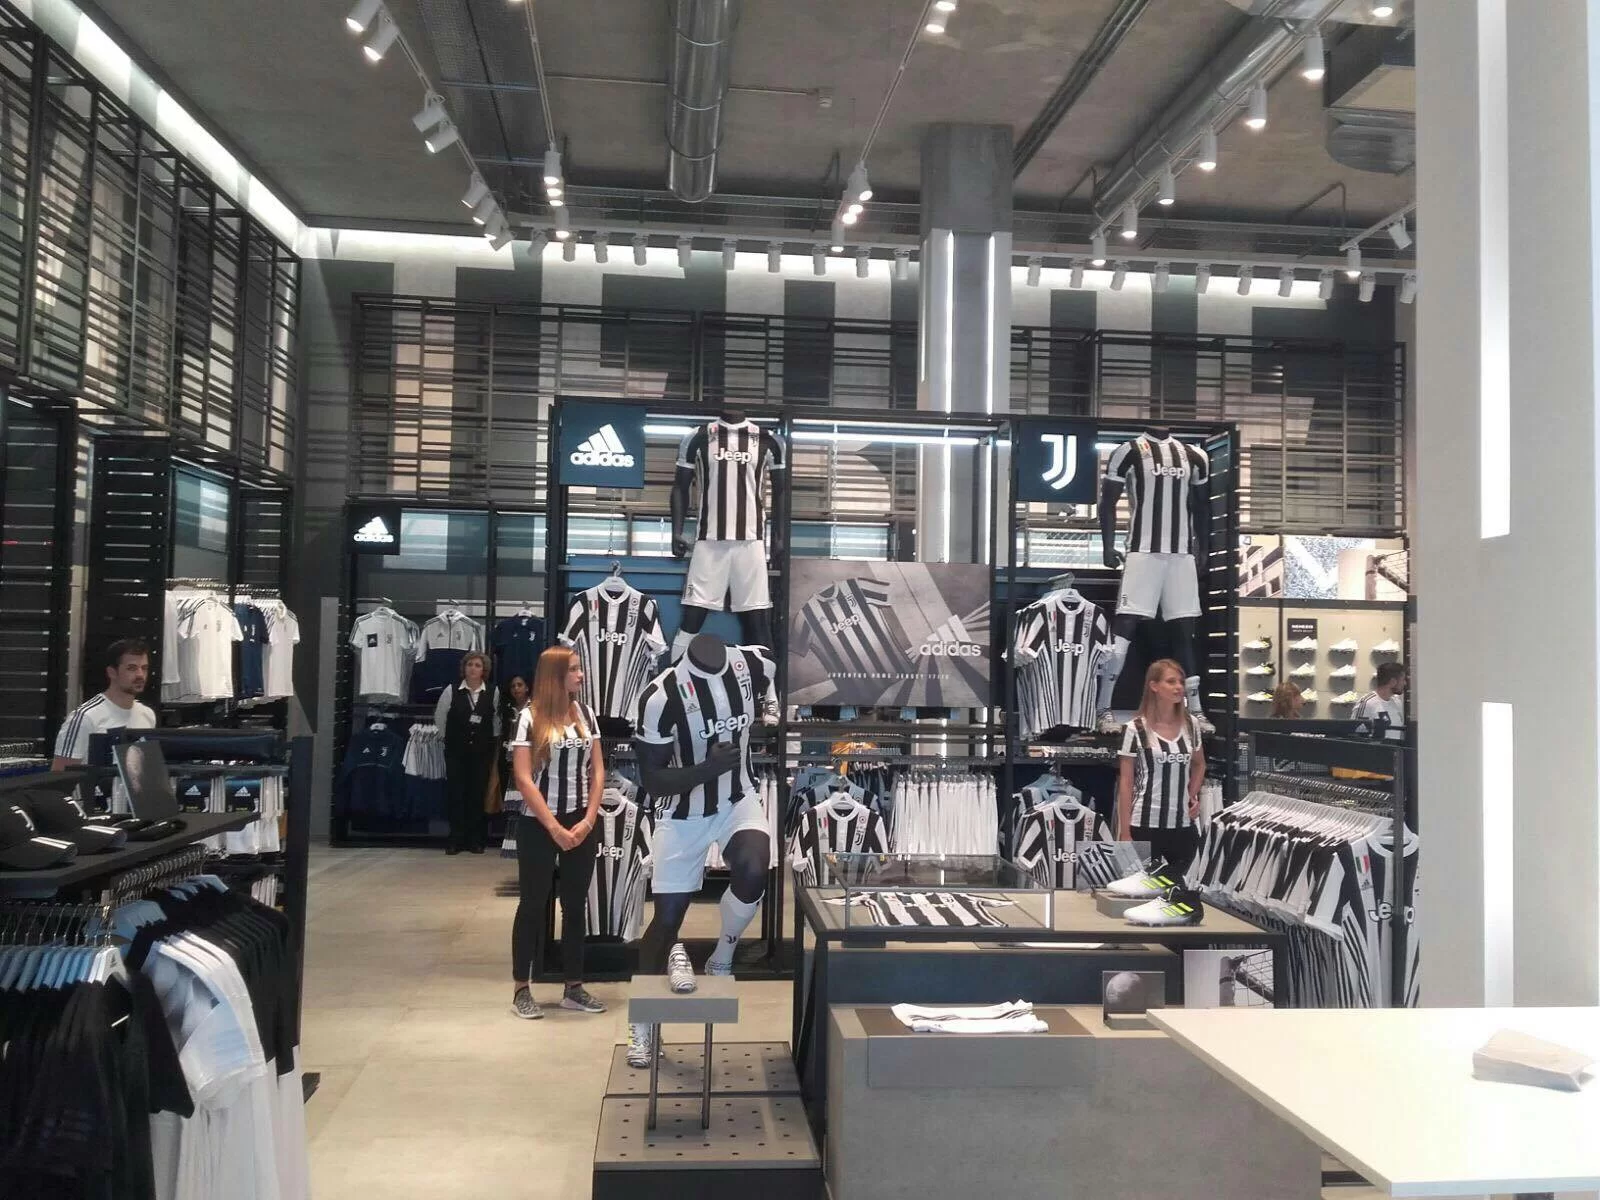 L’avventura è cominciata: aperto lo Store della Juventus a Roma!